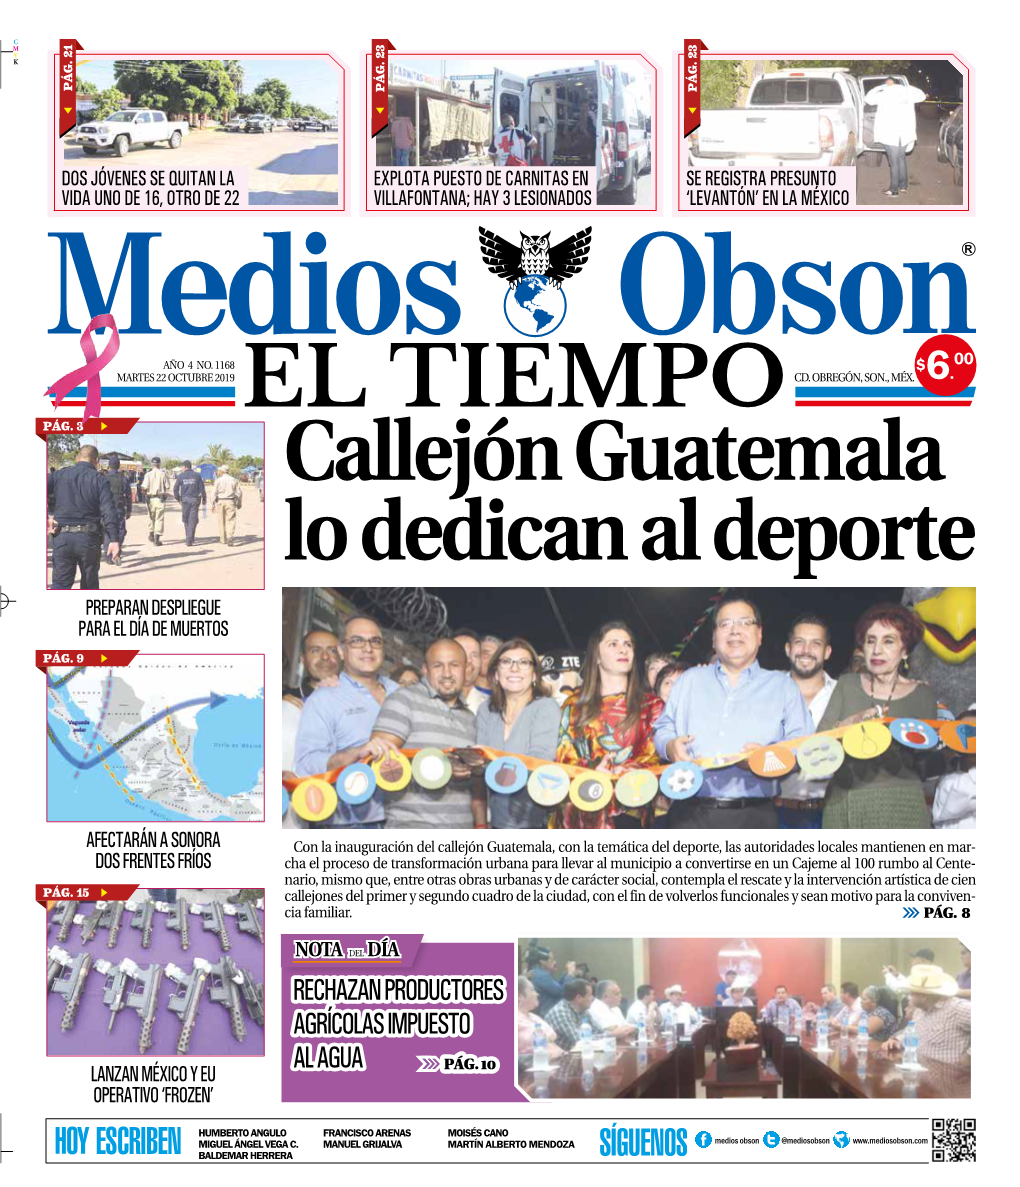 Callejón Guatemala Lo Dedican Al Deporte PREPARAN DESPLIEGUE PARA EL DÍA DE MUERTOS